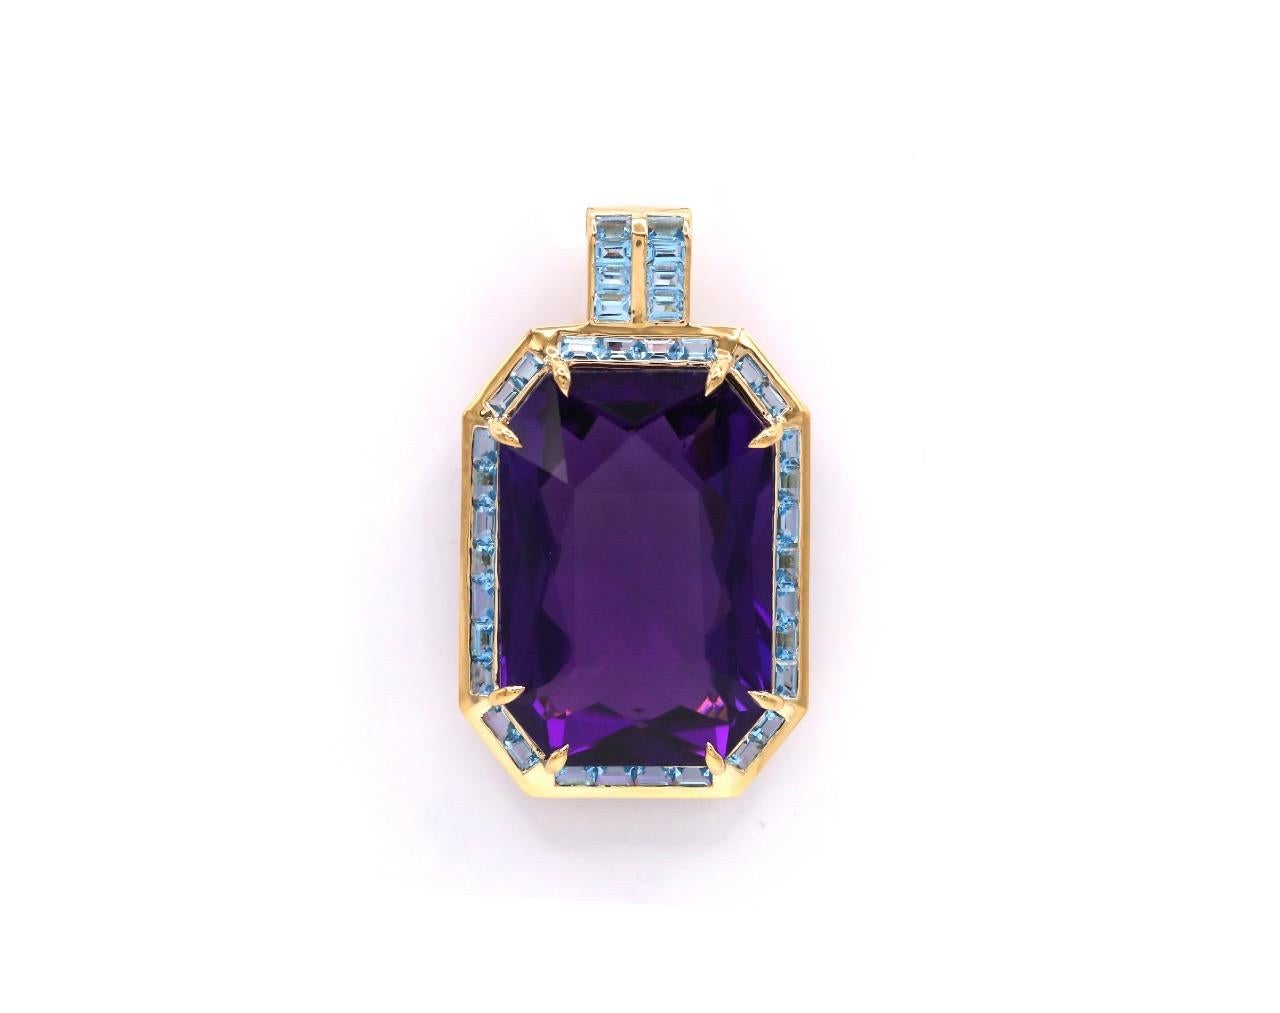 Ce superbe collier composé de topazes bleues et de quartz s'inspire de motifs orientaux. Ce superbe quartz violet de 66,46 Ct 31,20 x 21,40 x 13,70 mm est magnifiquement présenté sur une monture en or jaune 18 K et topaze bleue 38. Cet